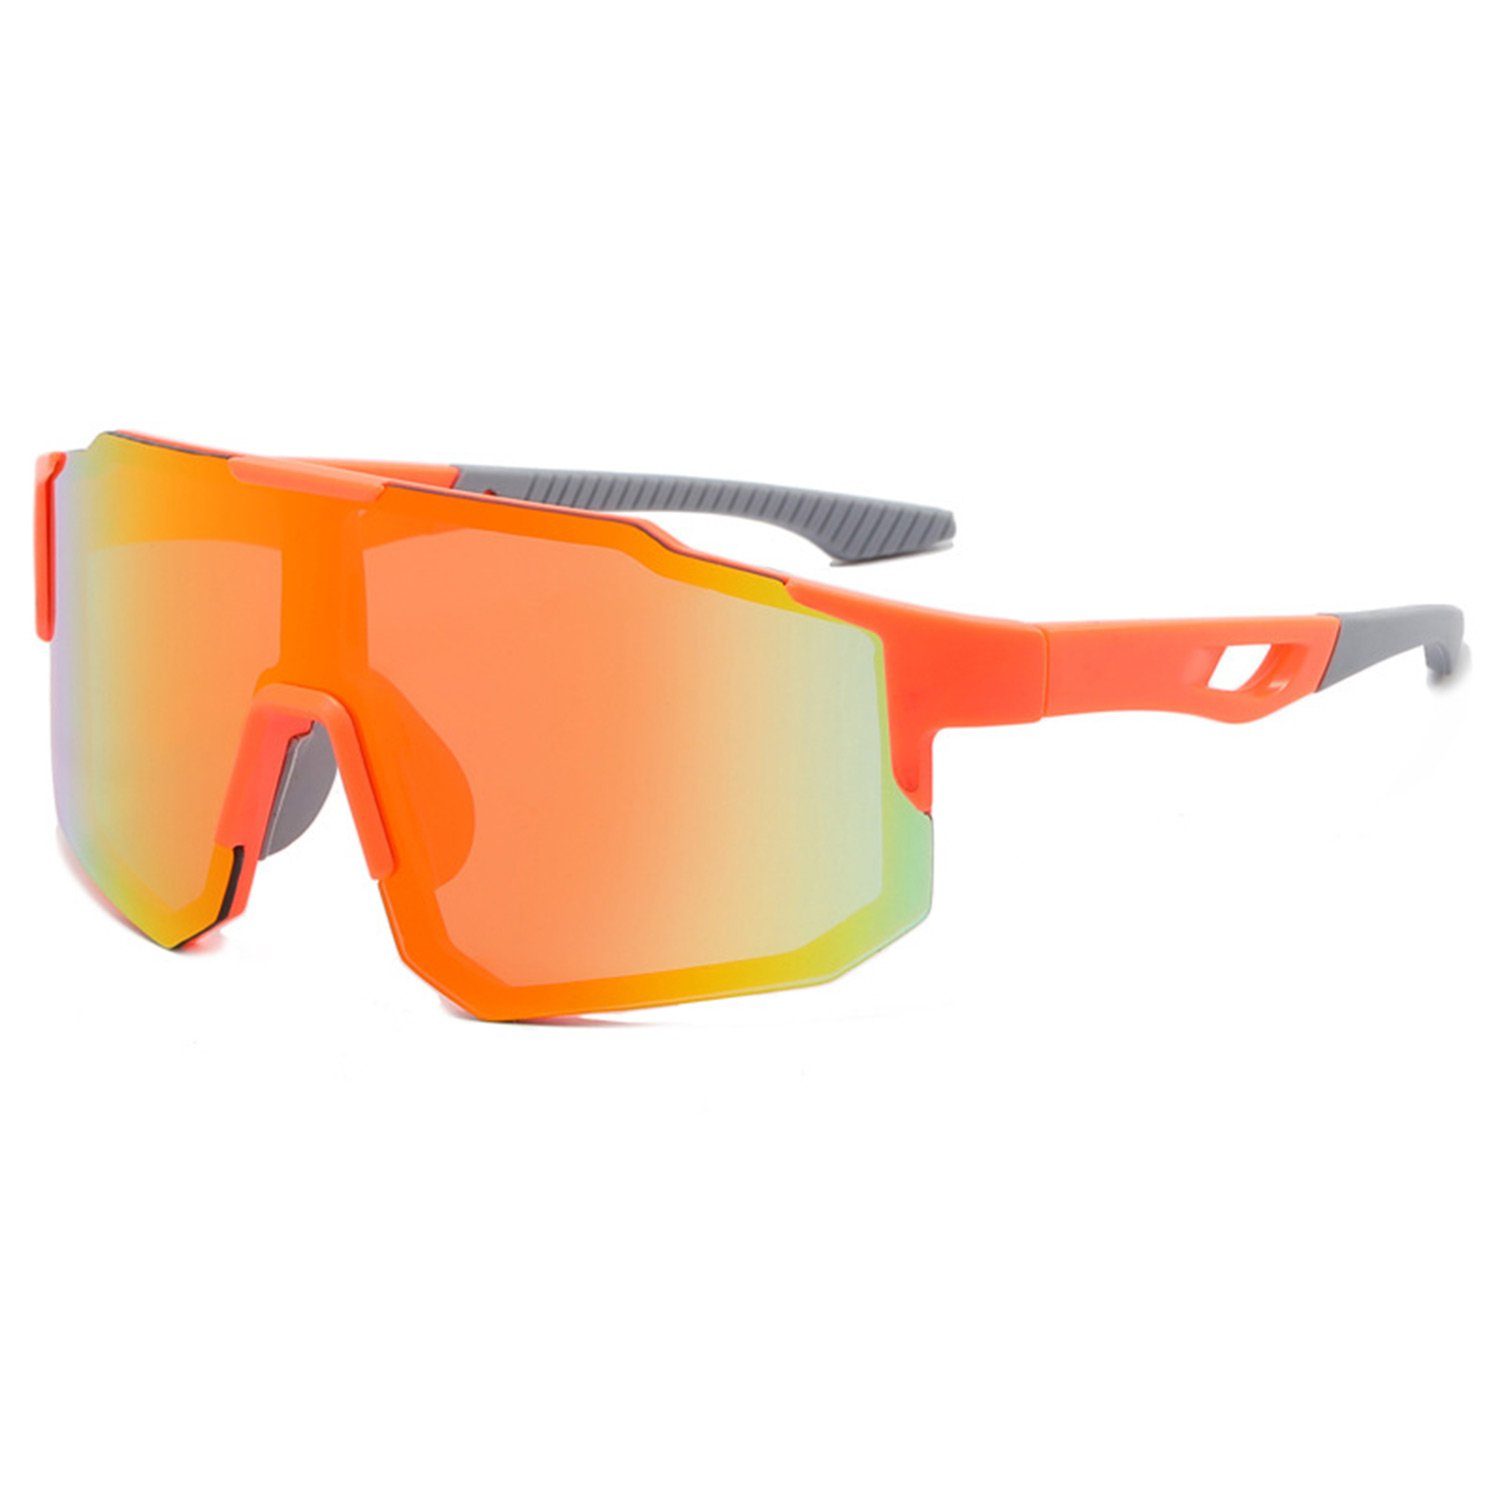 MAGICSHE Fahrradbrille Fahrradbrillen für Herren und Damen, Sport-Sonnenbrillen, Windschutzscheibe, UV-beständige und klare Sicht Brille Orange Rahmen orange Folie